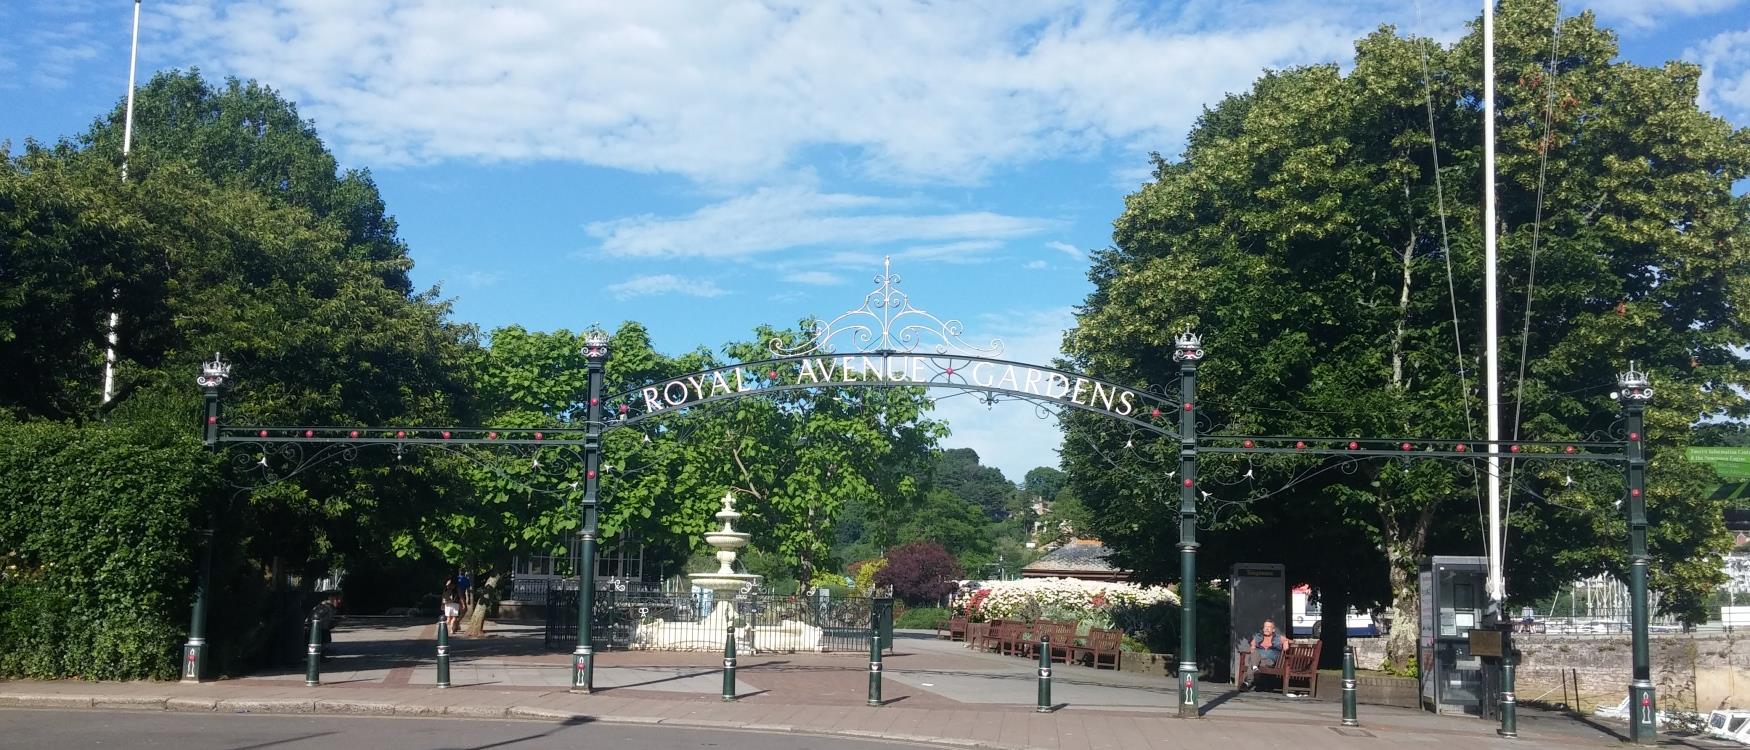 Royal Avenue Gardens Dartmouth